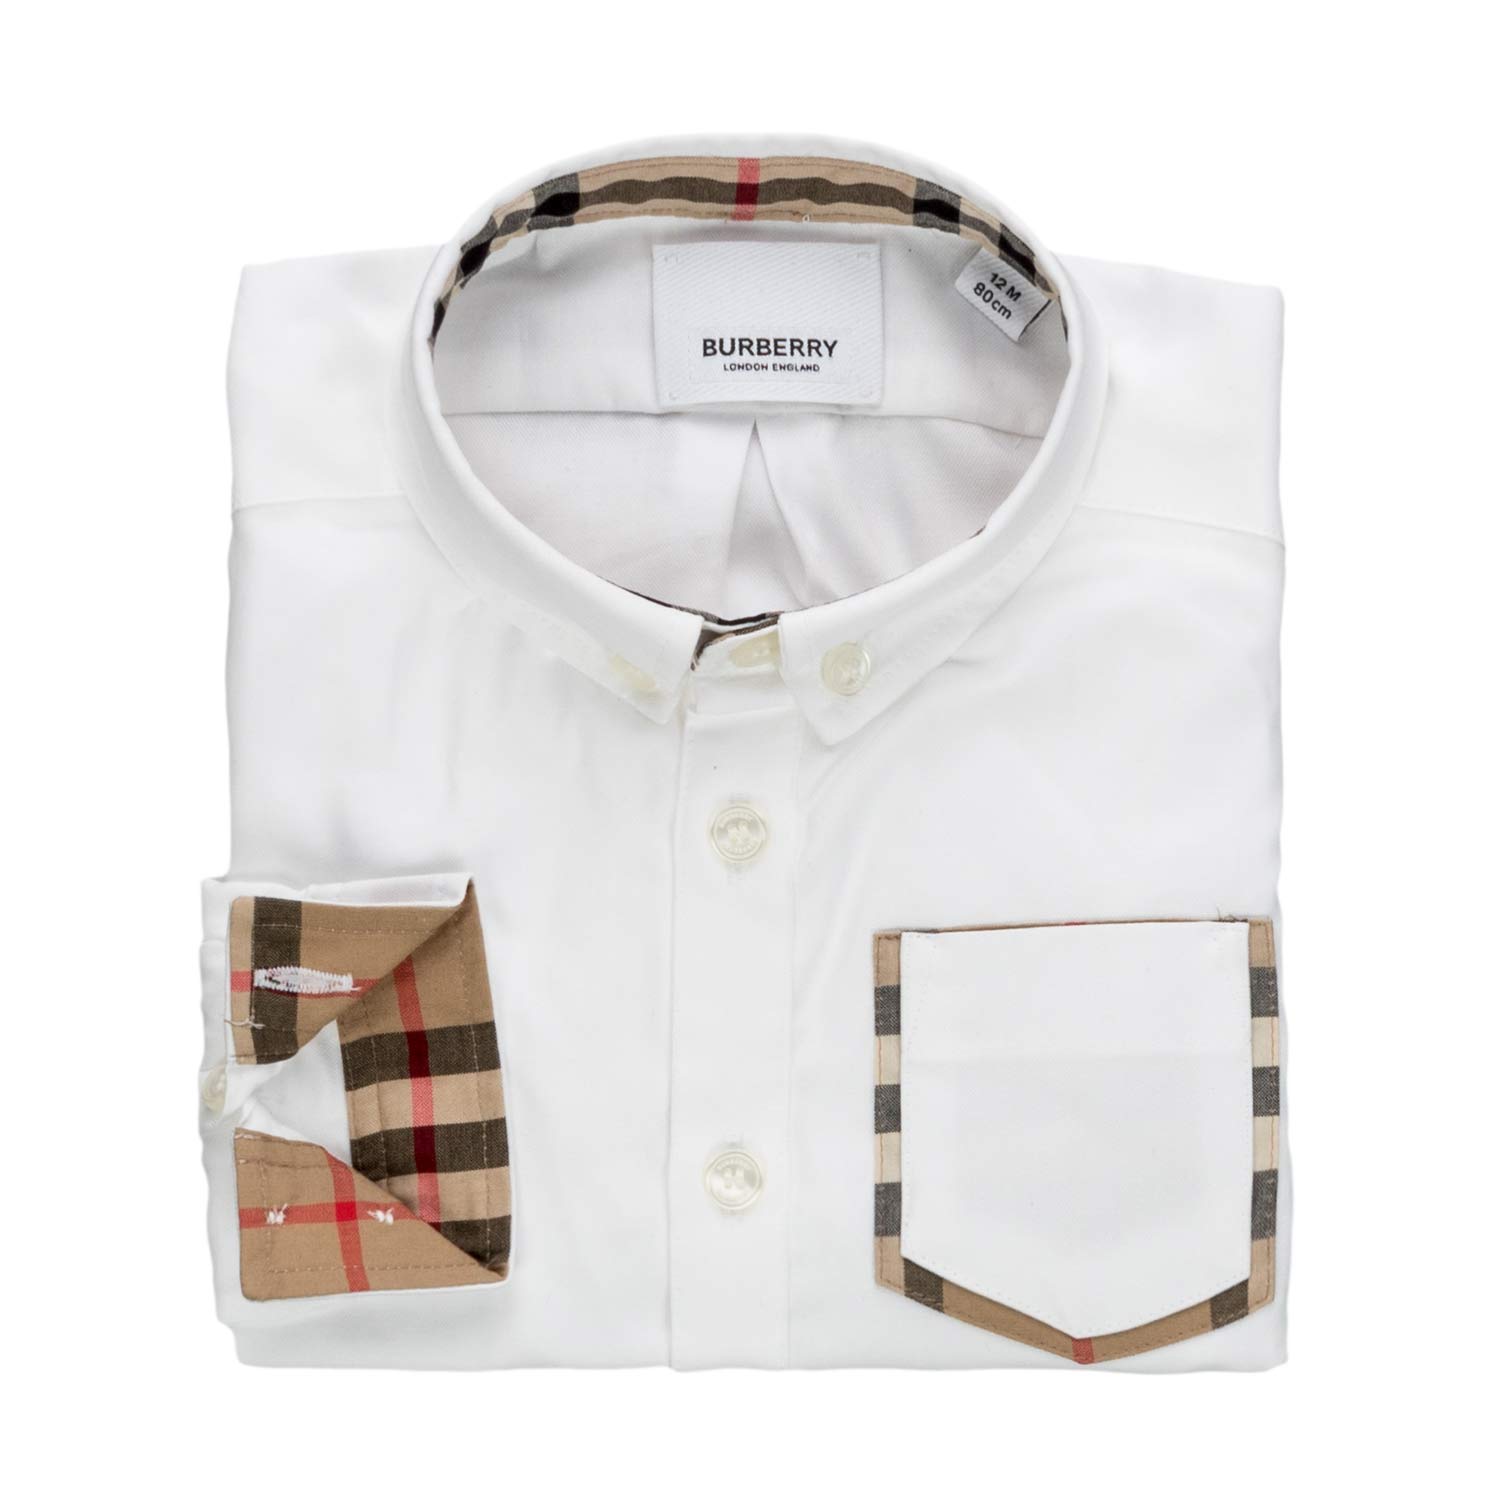 Burberry - Oxford Shirt For Baby Boys - annameglio.com shop online